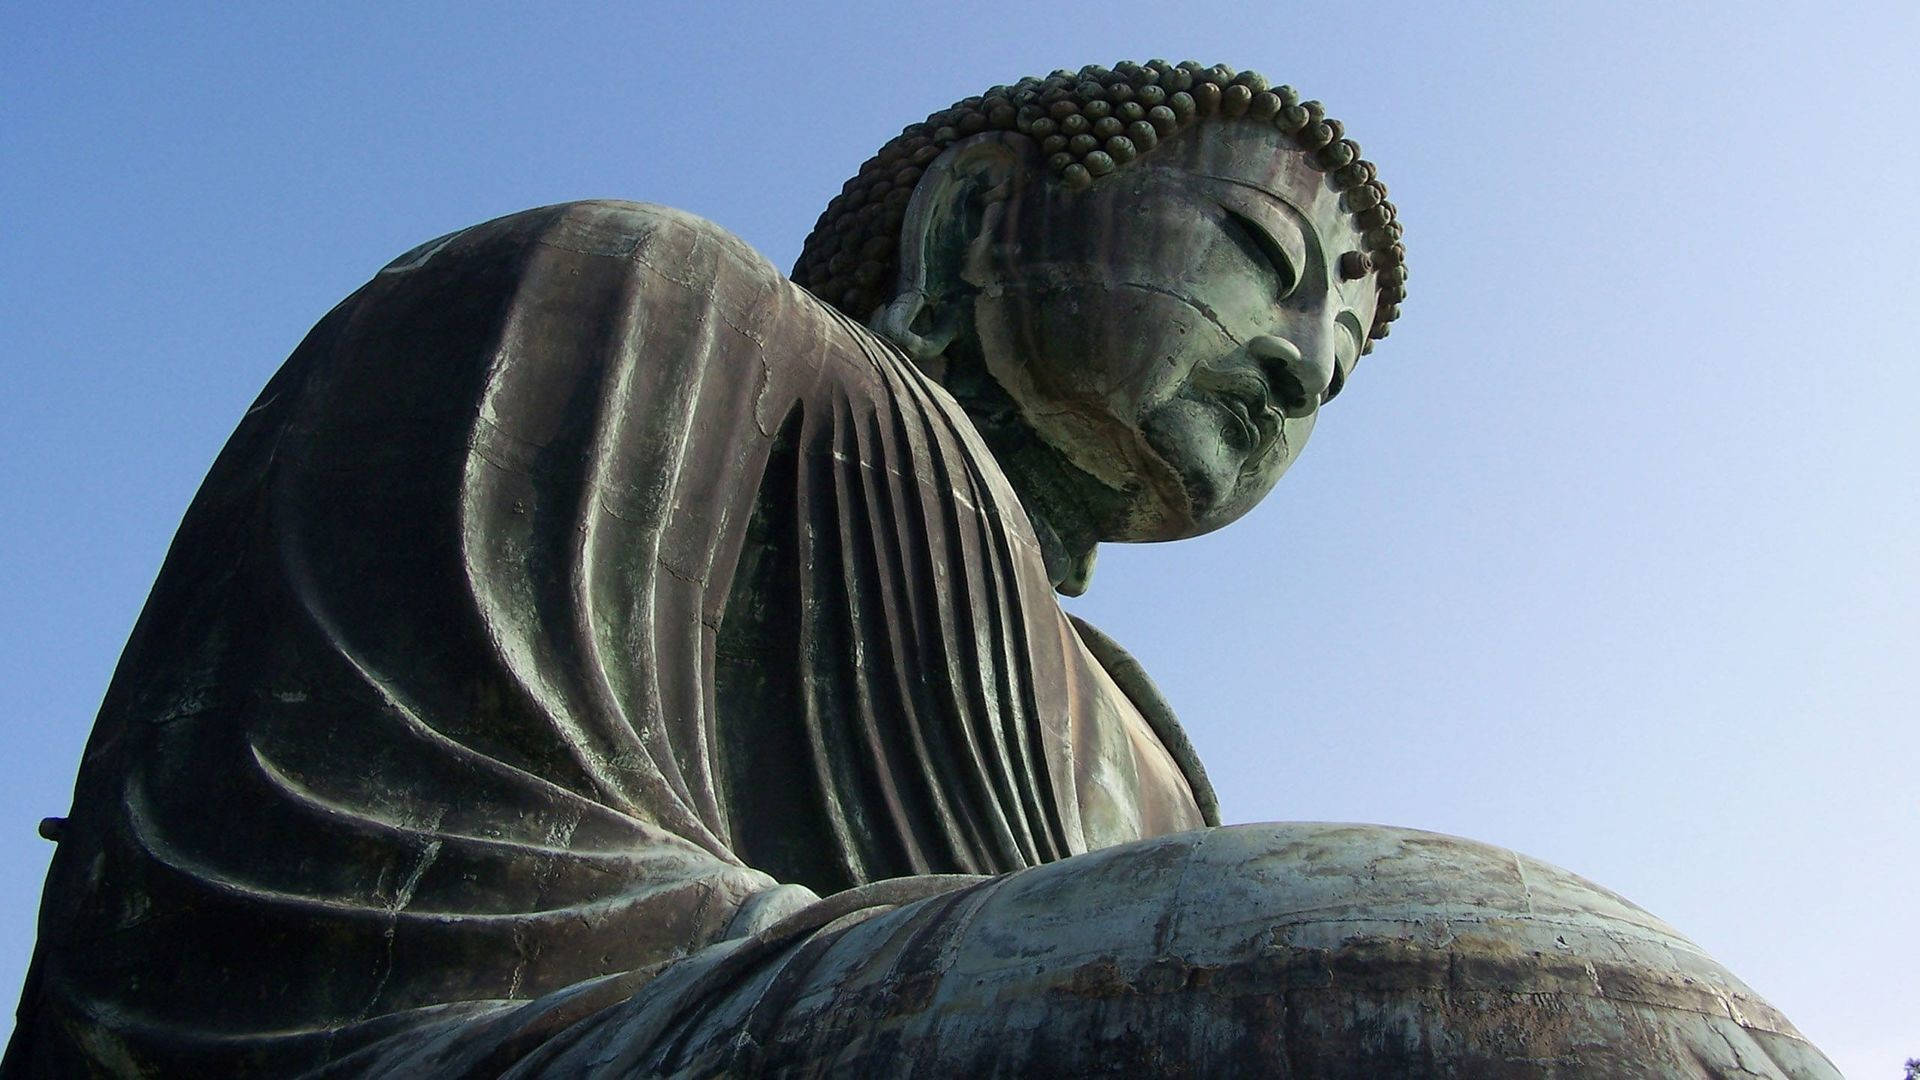 Großestatue Von Buddha In Hd Wallpaper